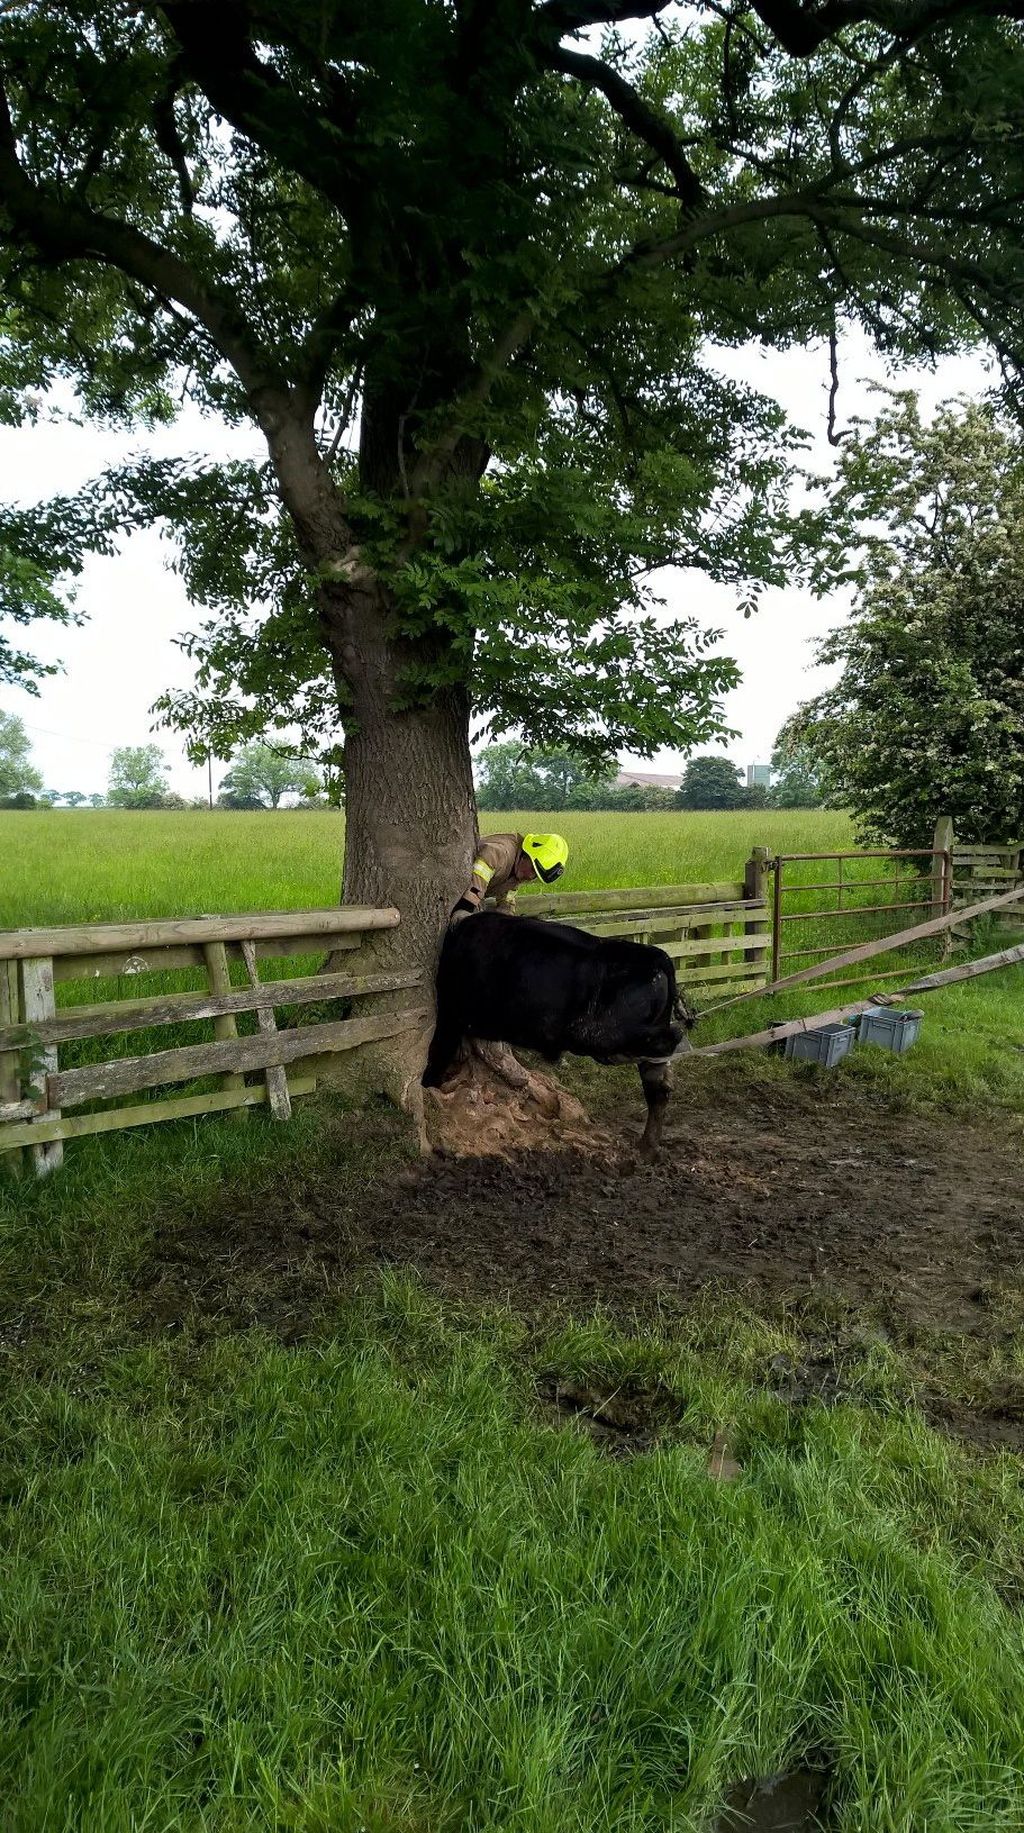 Lehmä jäi päästään kiinni puuhun Oxfordissa – uteliaisuus kostautui